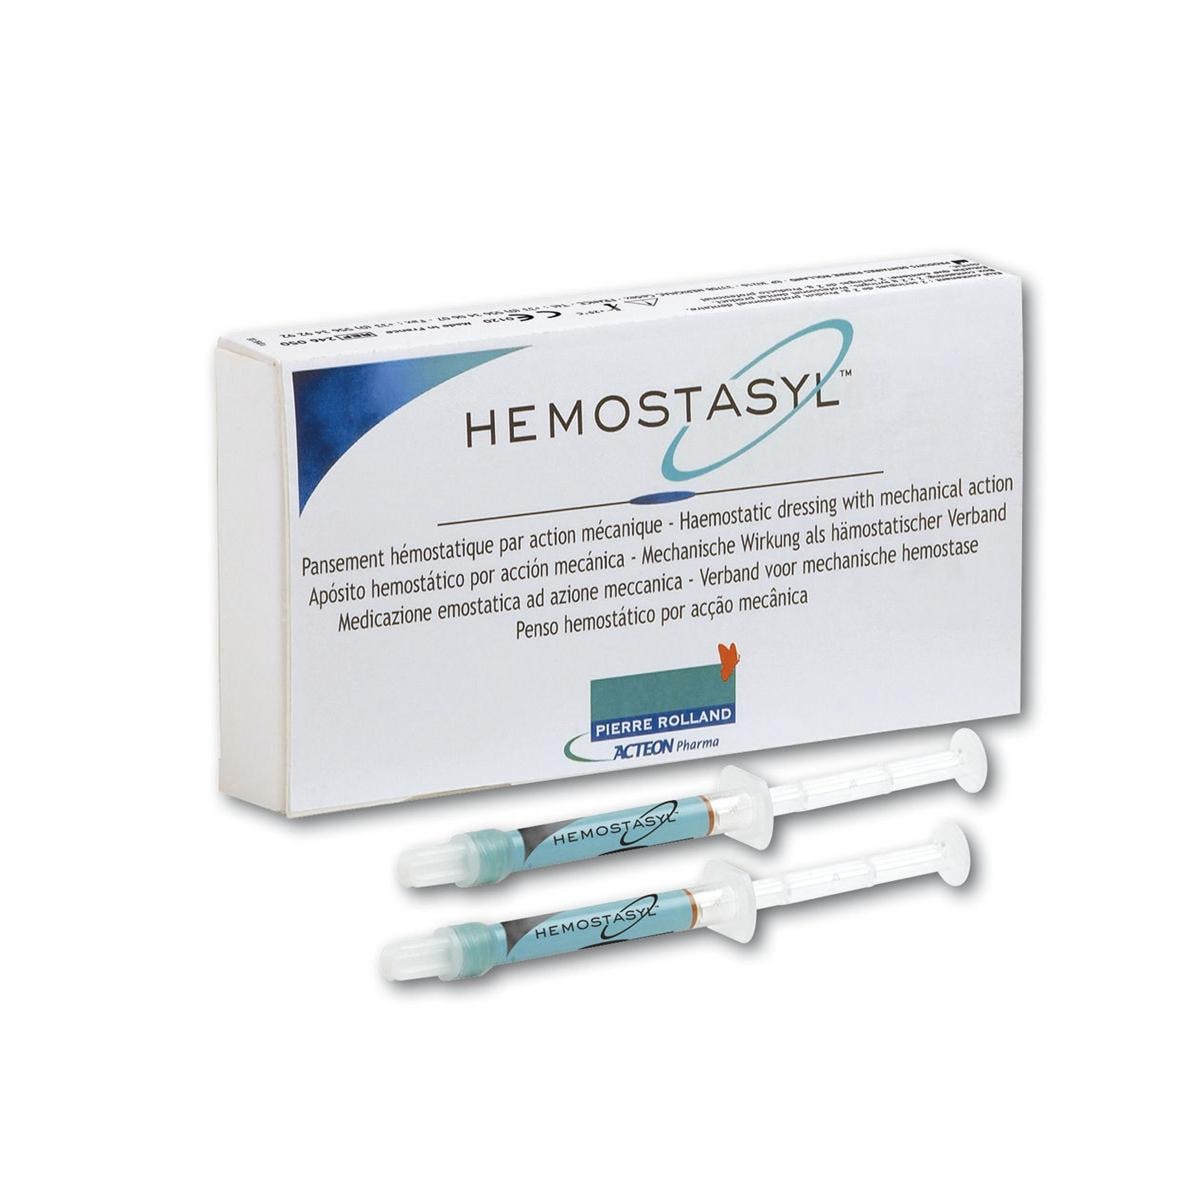 Hemostasyl kit - Kit